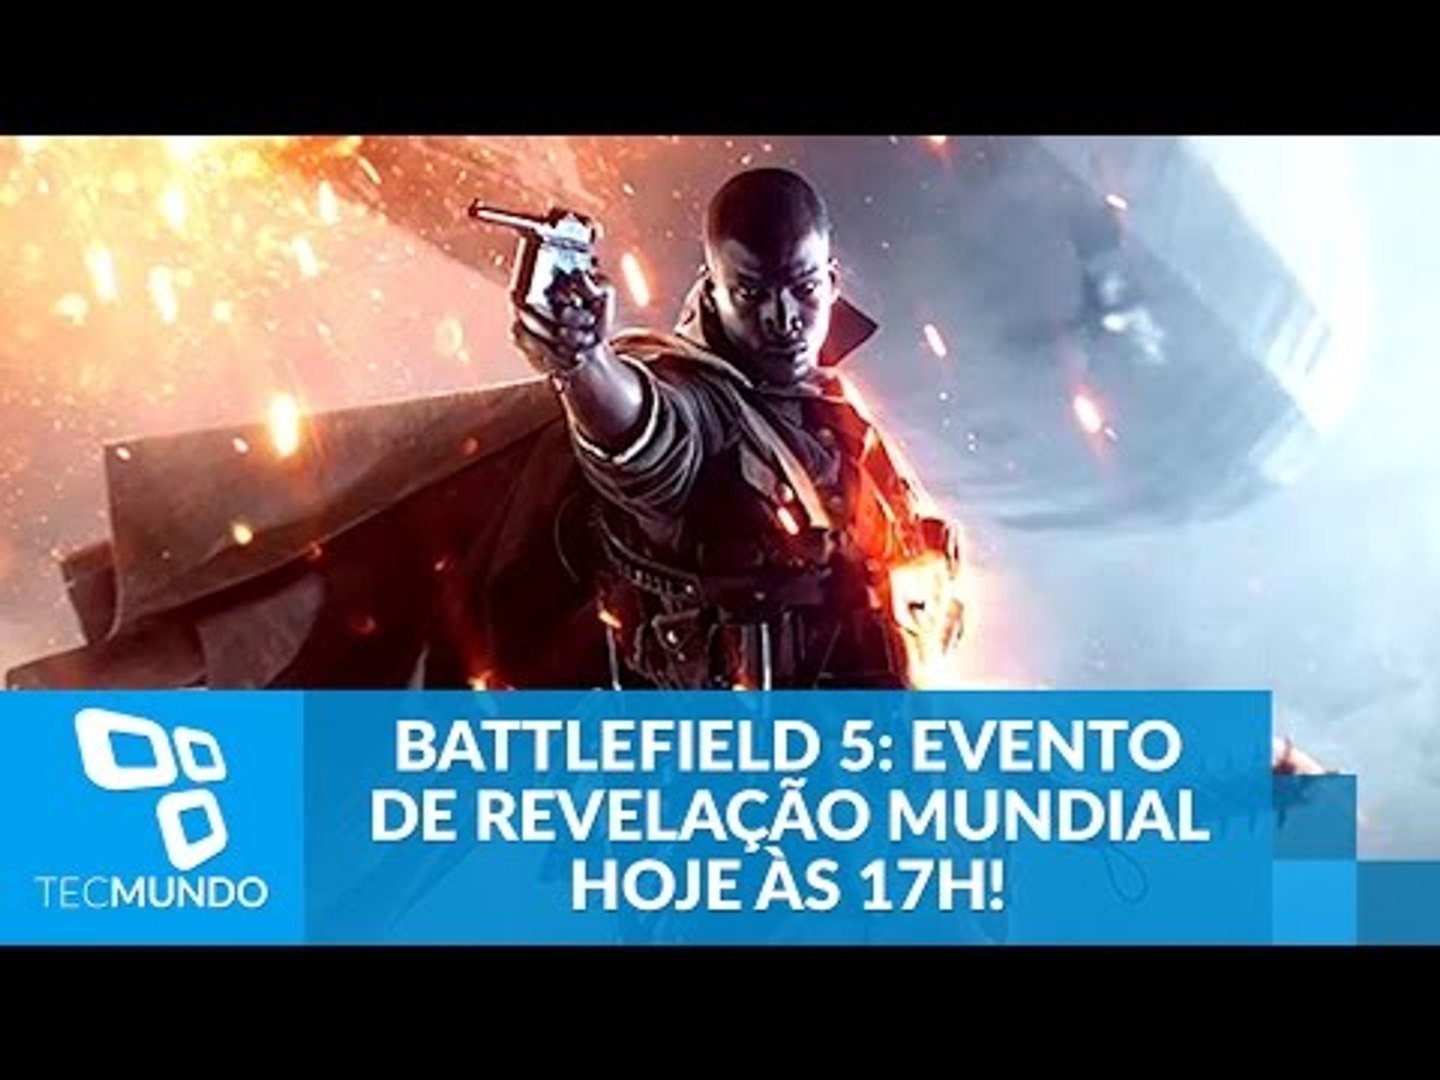 Battlefield 5: Evento mundial de revelação hoje às 17h! - video